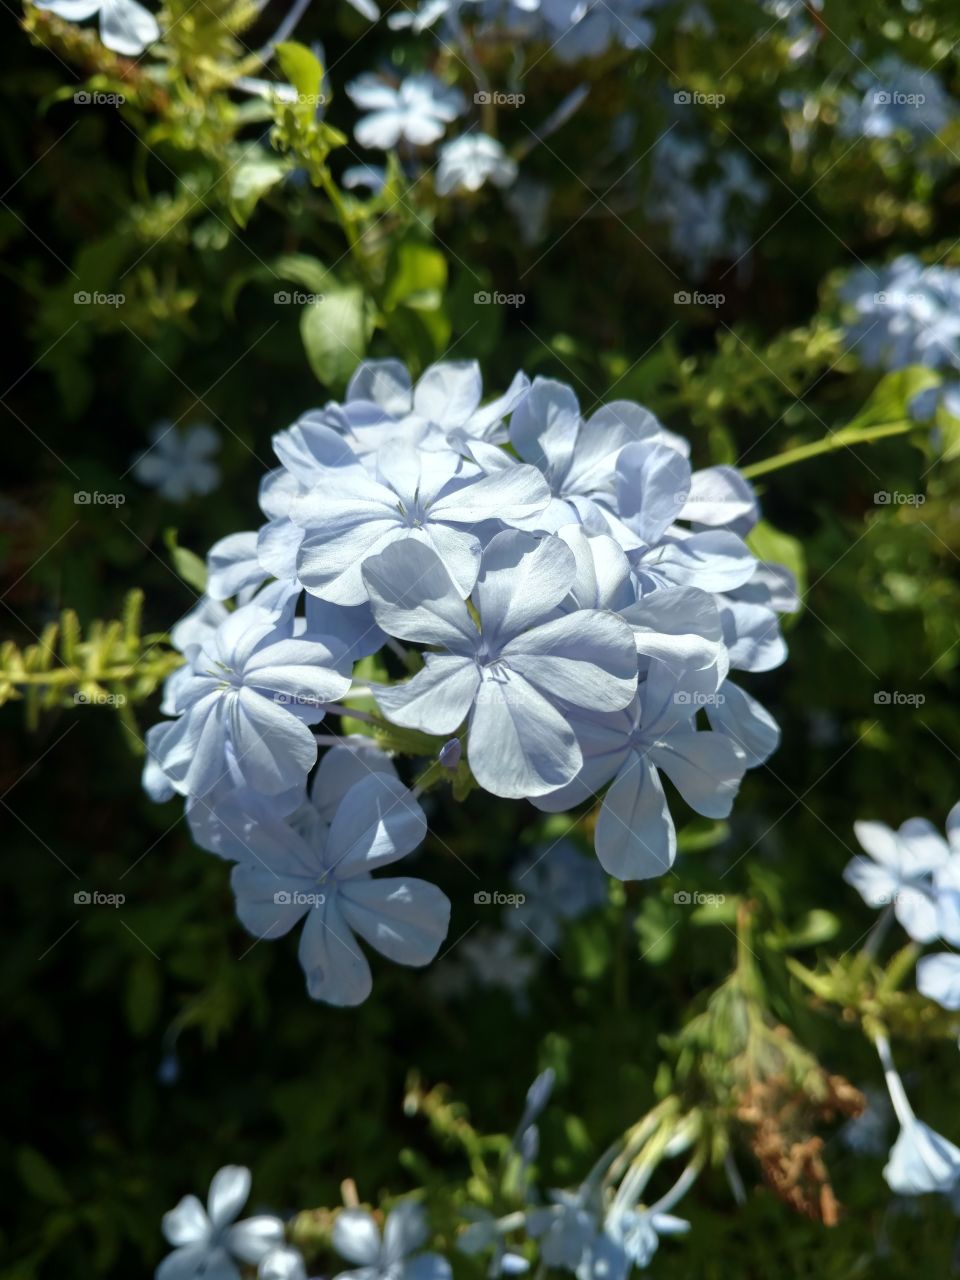 Light blue flower cluster